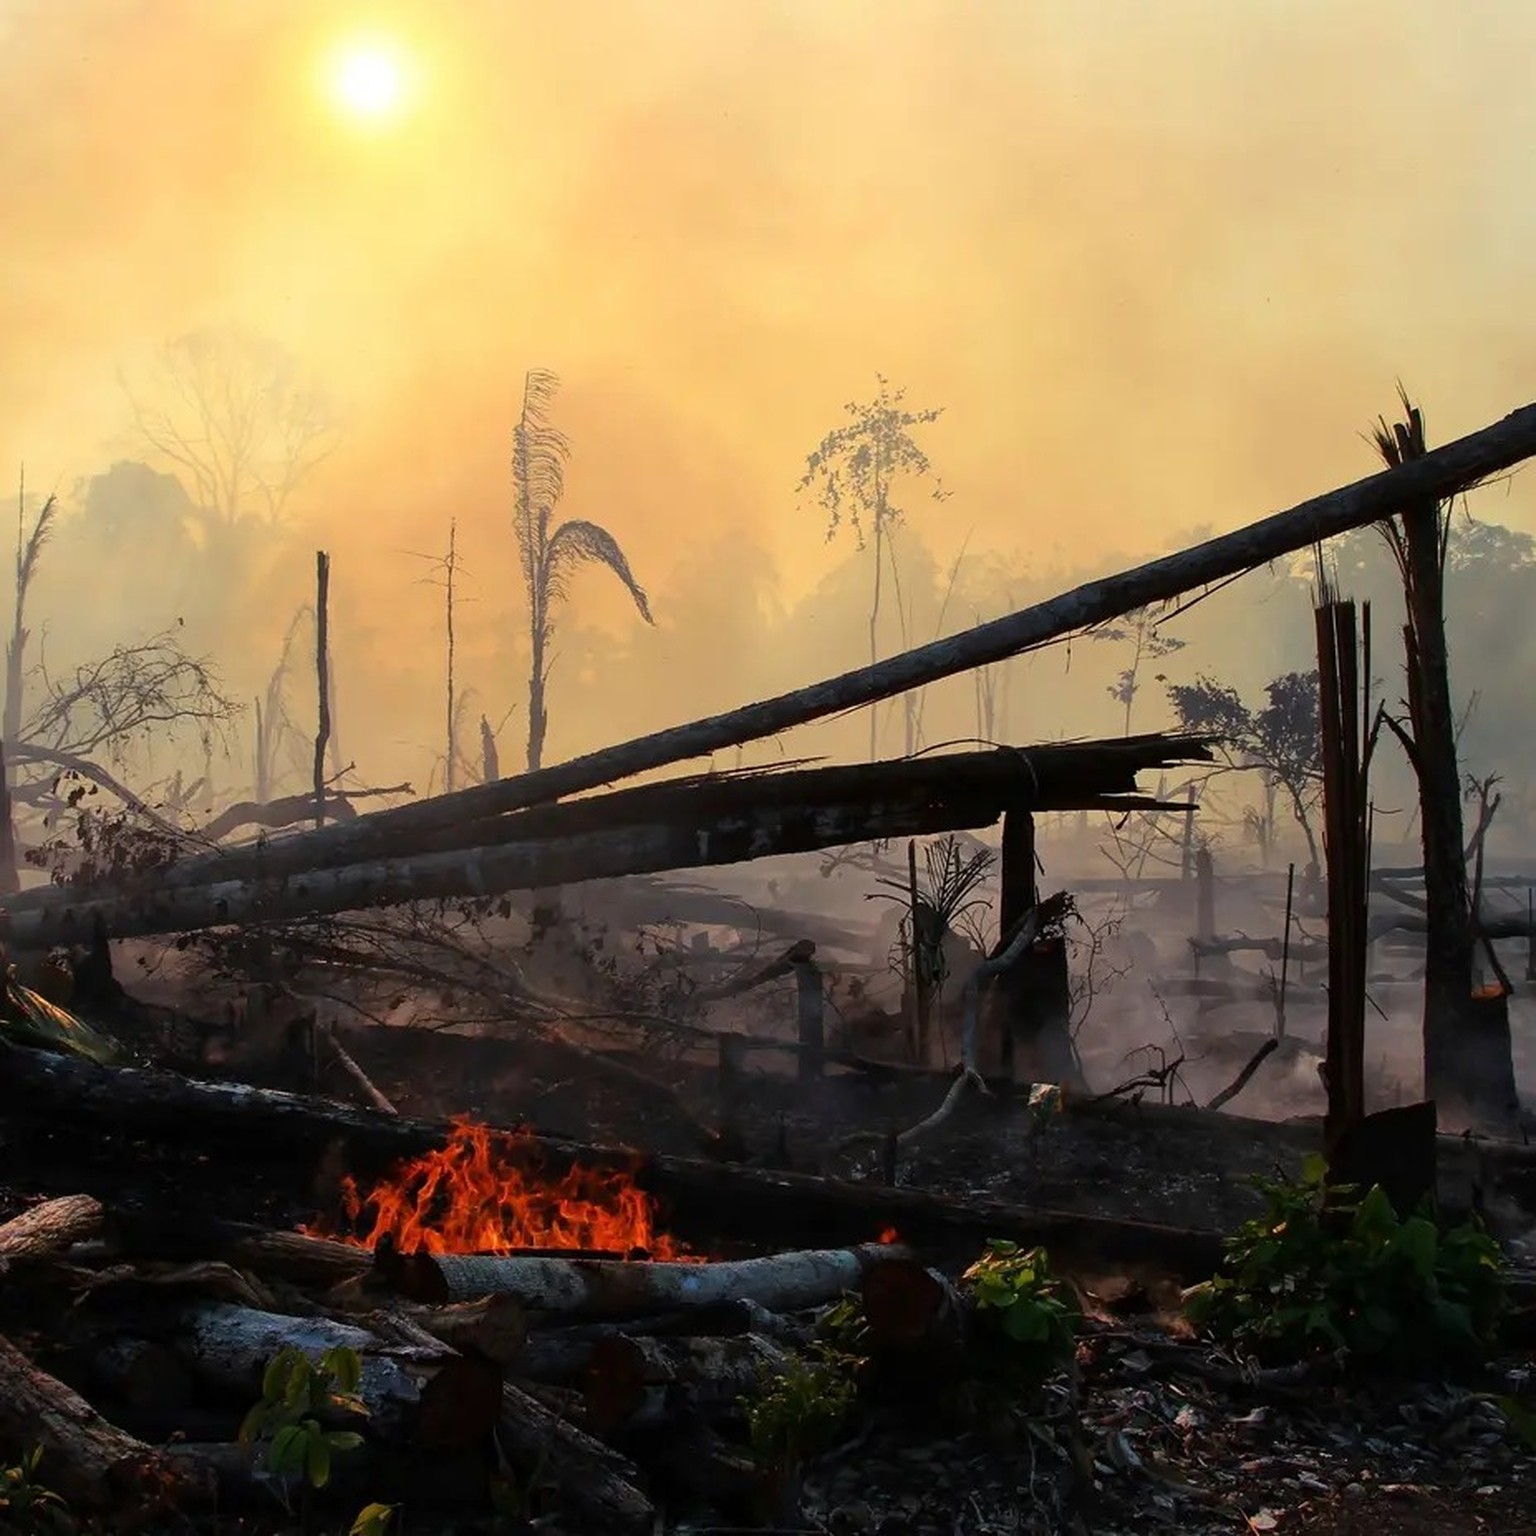 Waldbrände, Trockenheit und Hitze: Wetterextreme nehmen zu. Die Folgen sind verheerend.